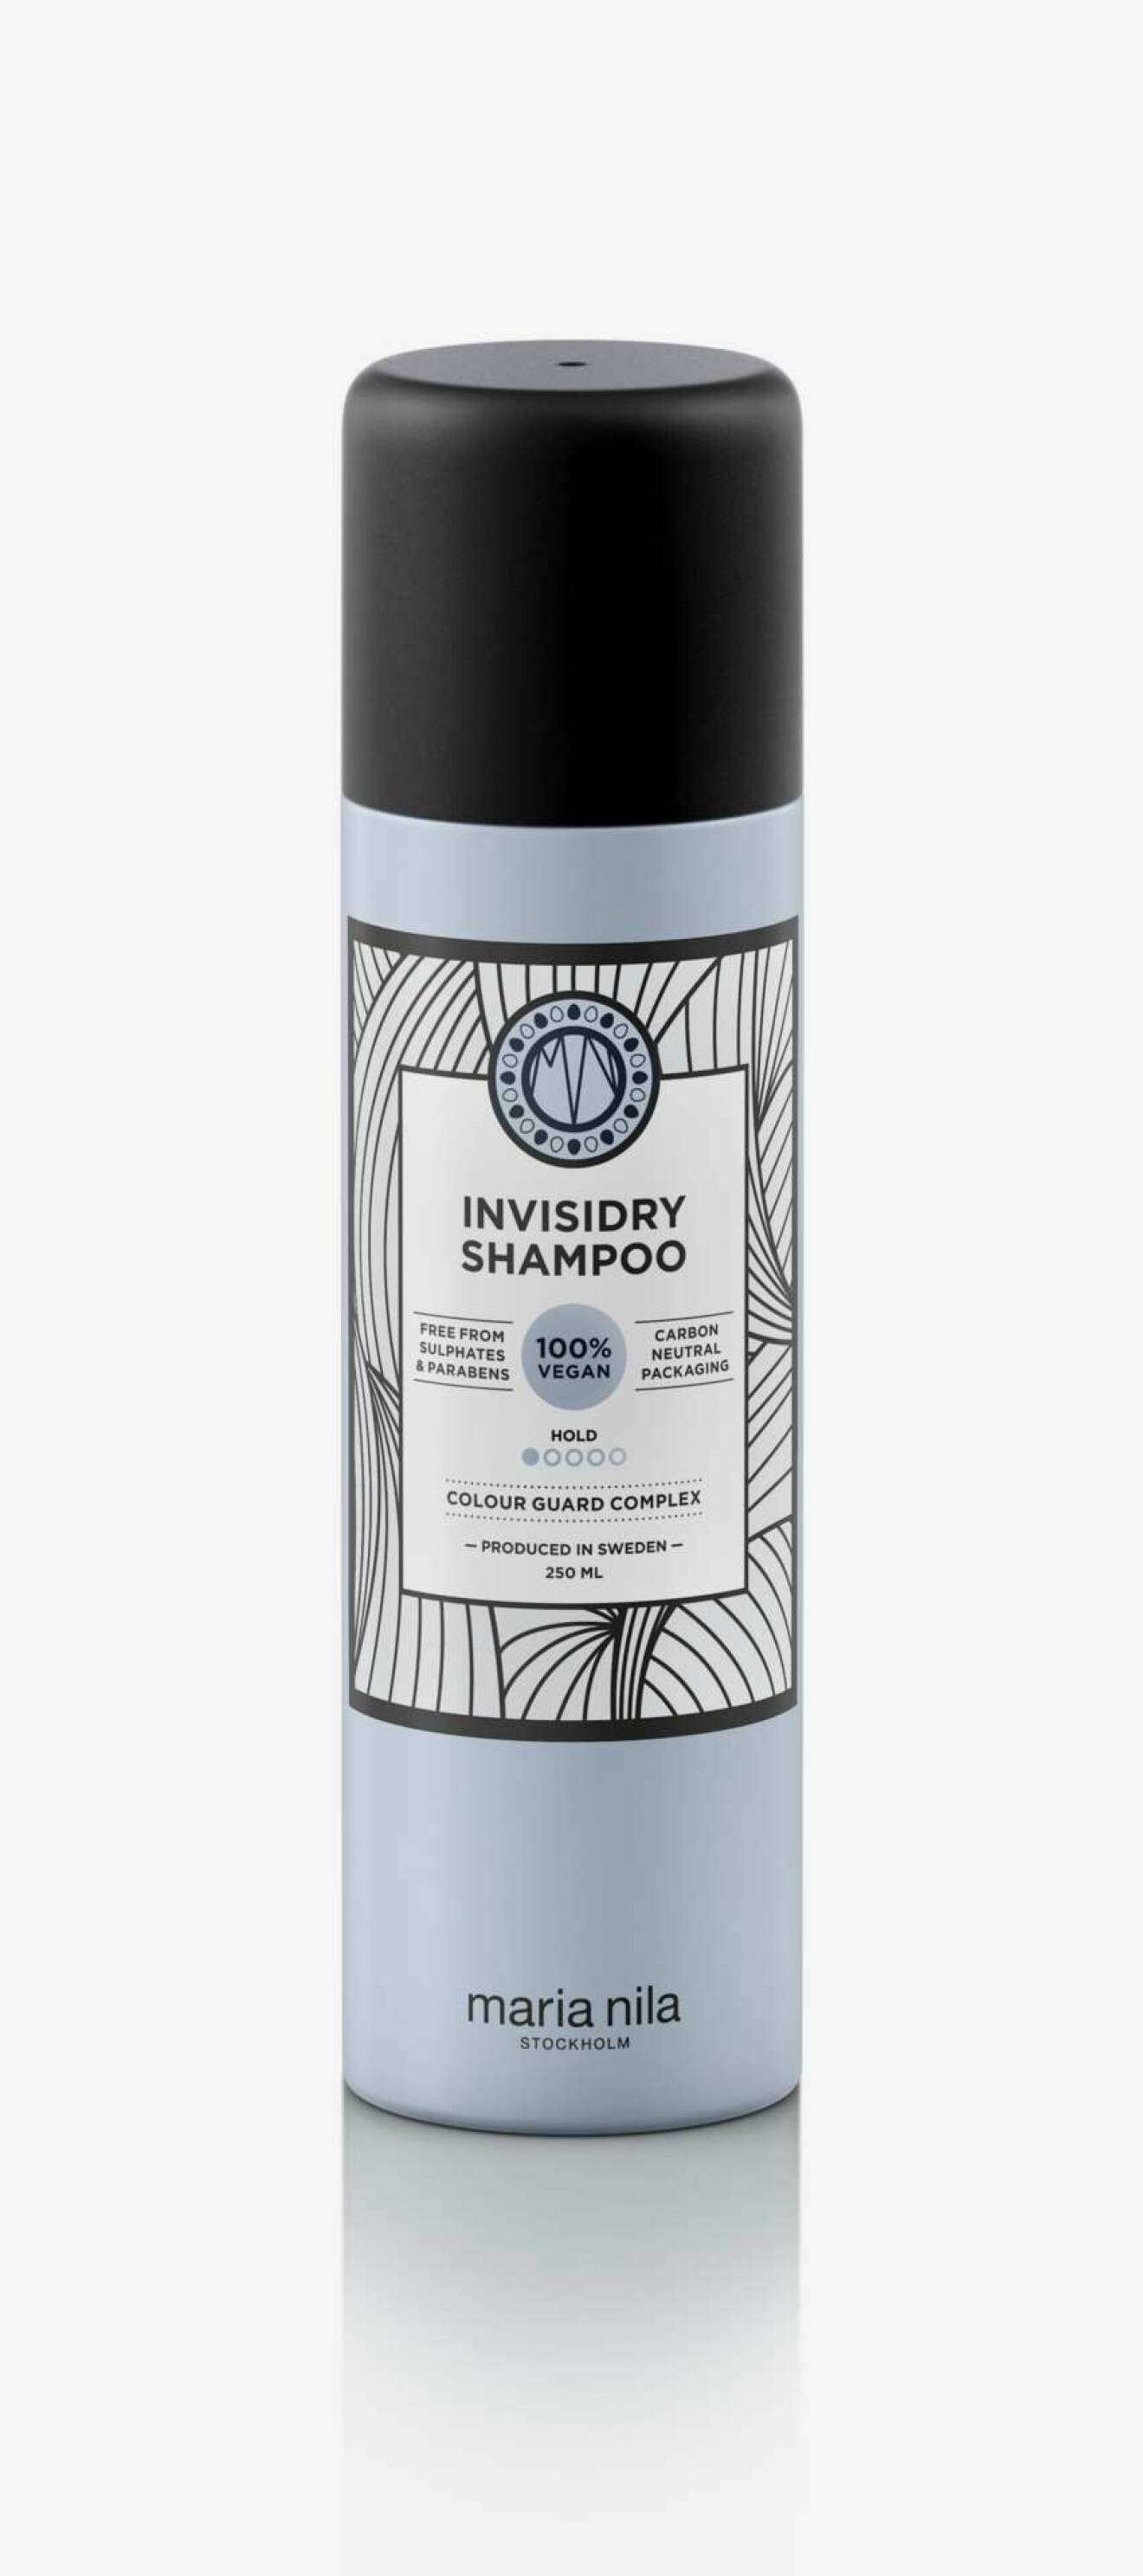 En bild på ett torrshampo, produkten Maria Nila – Invisidry Shampoo.